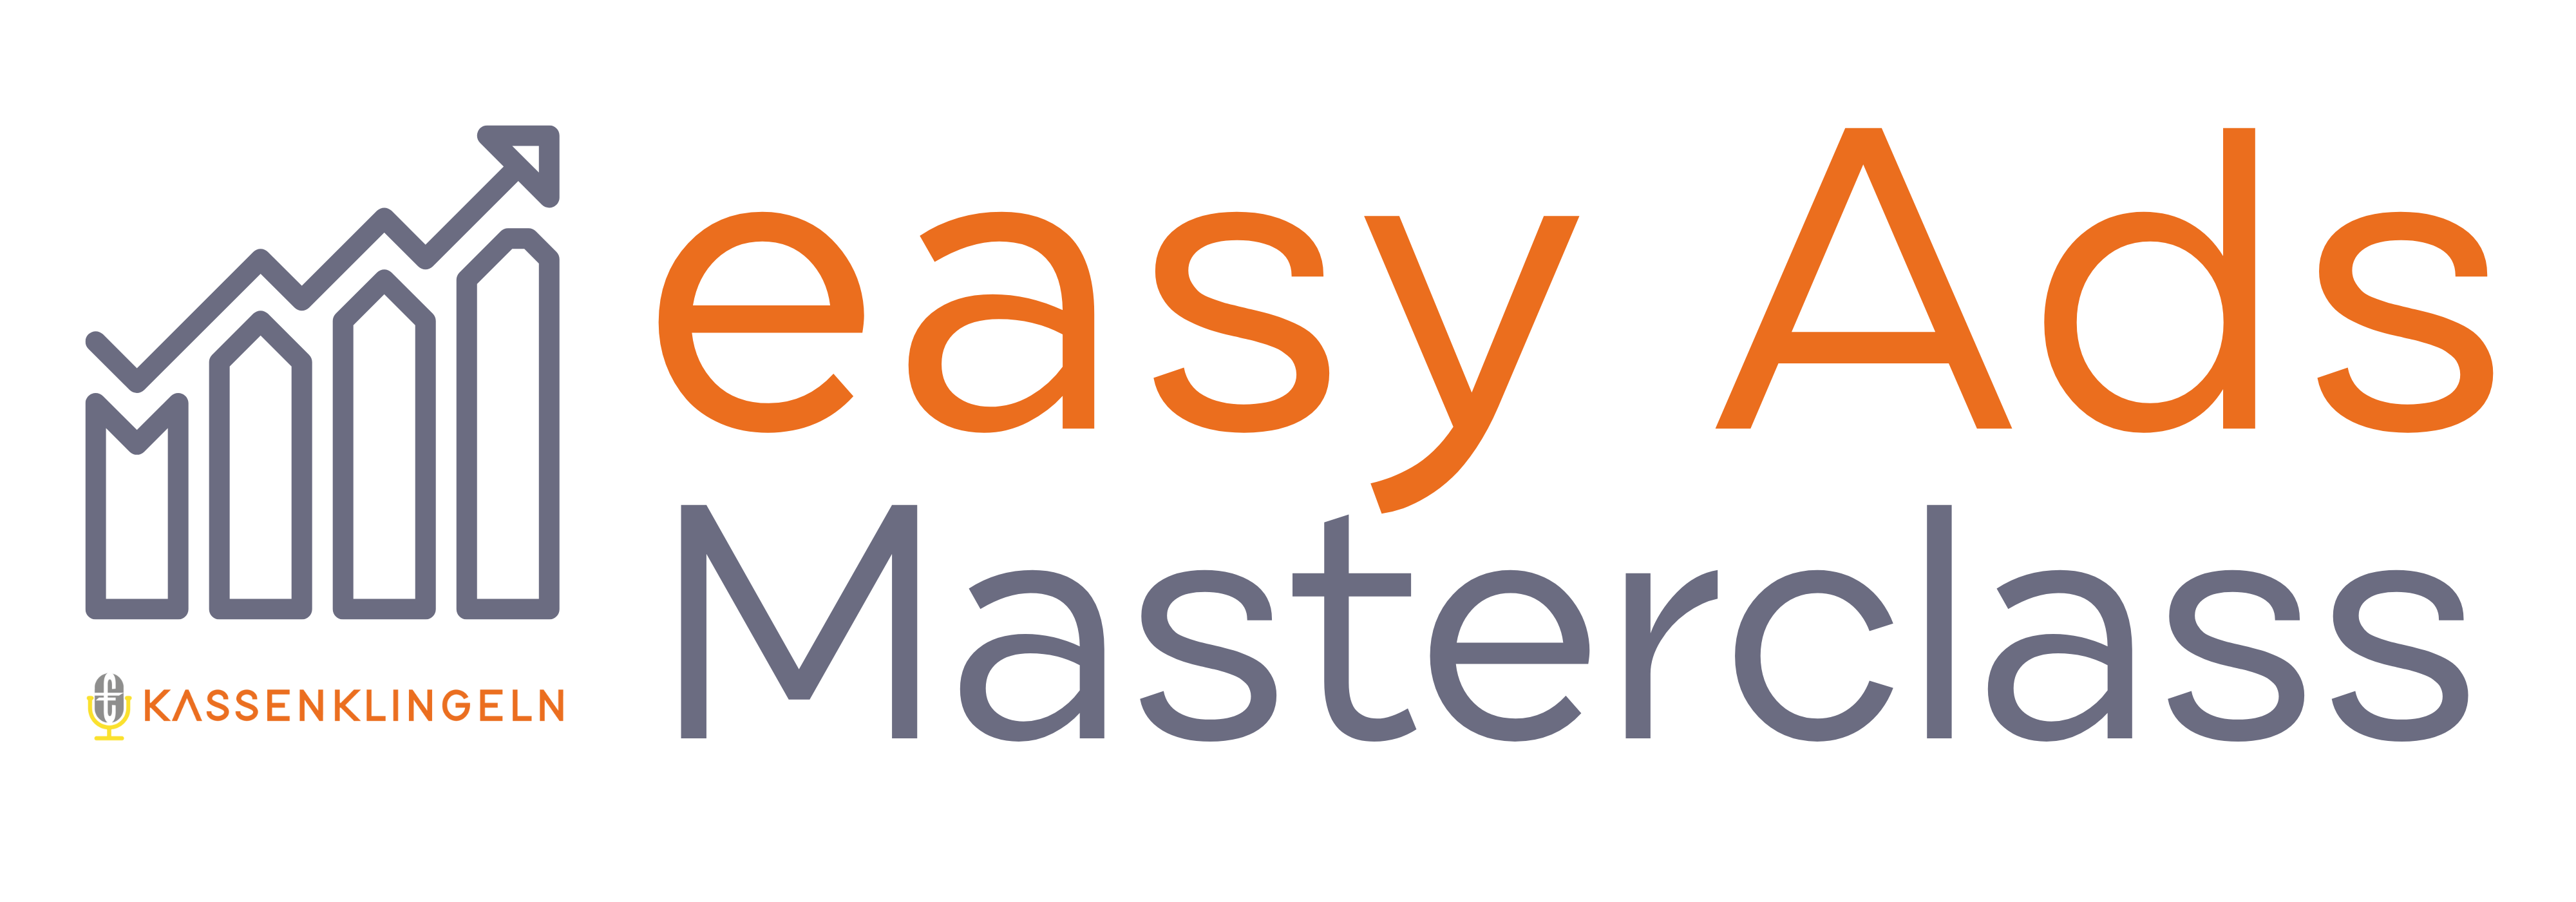 Etsy Ads Masterclass Kassenklingeln